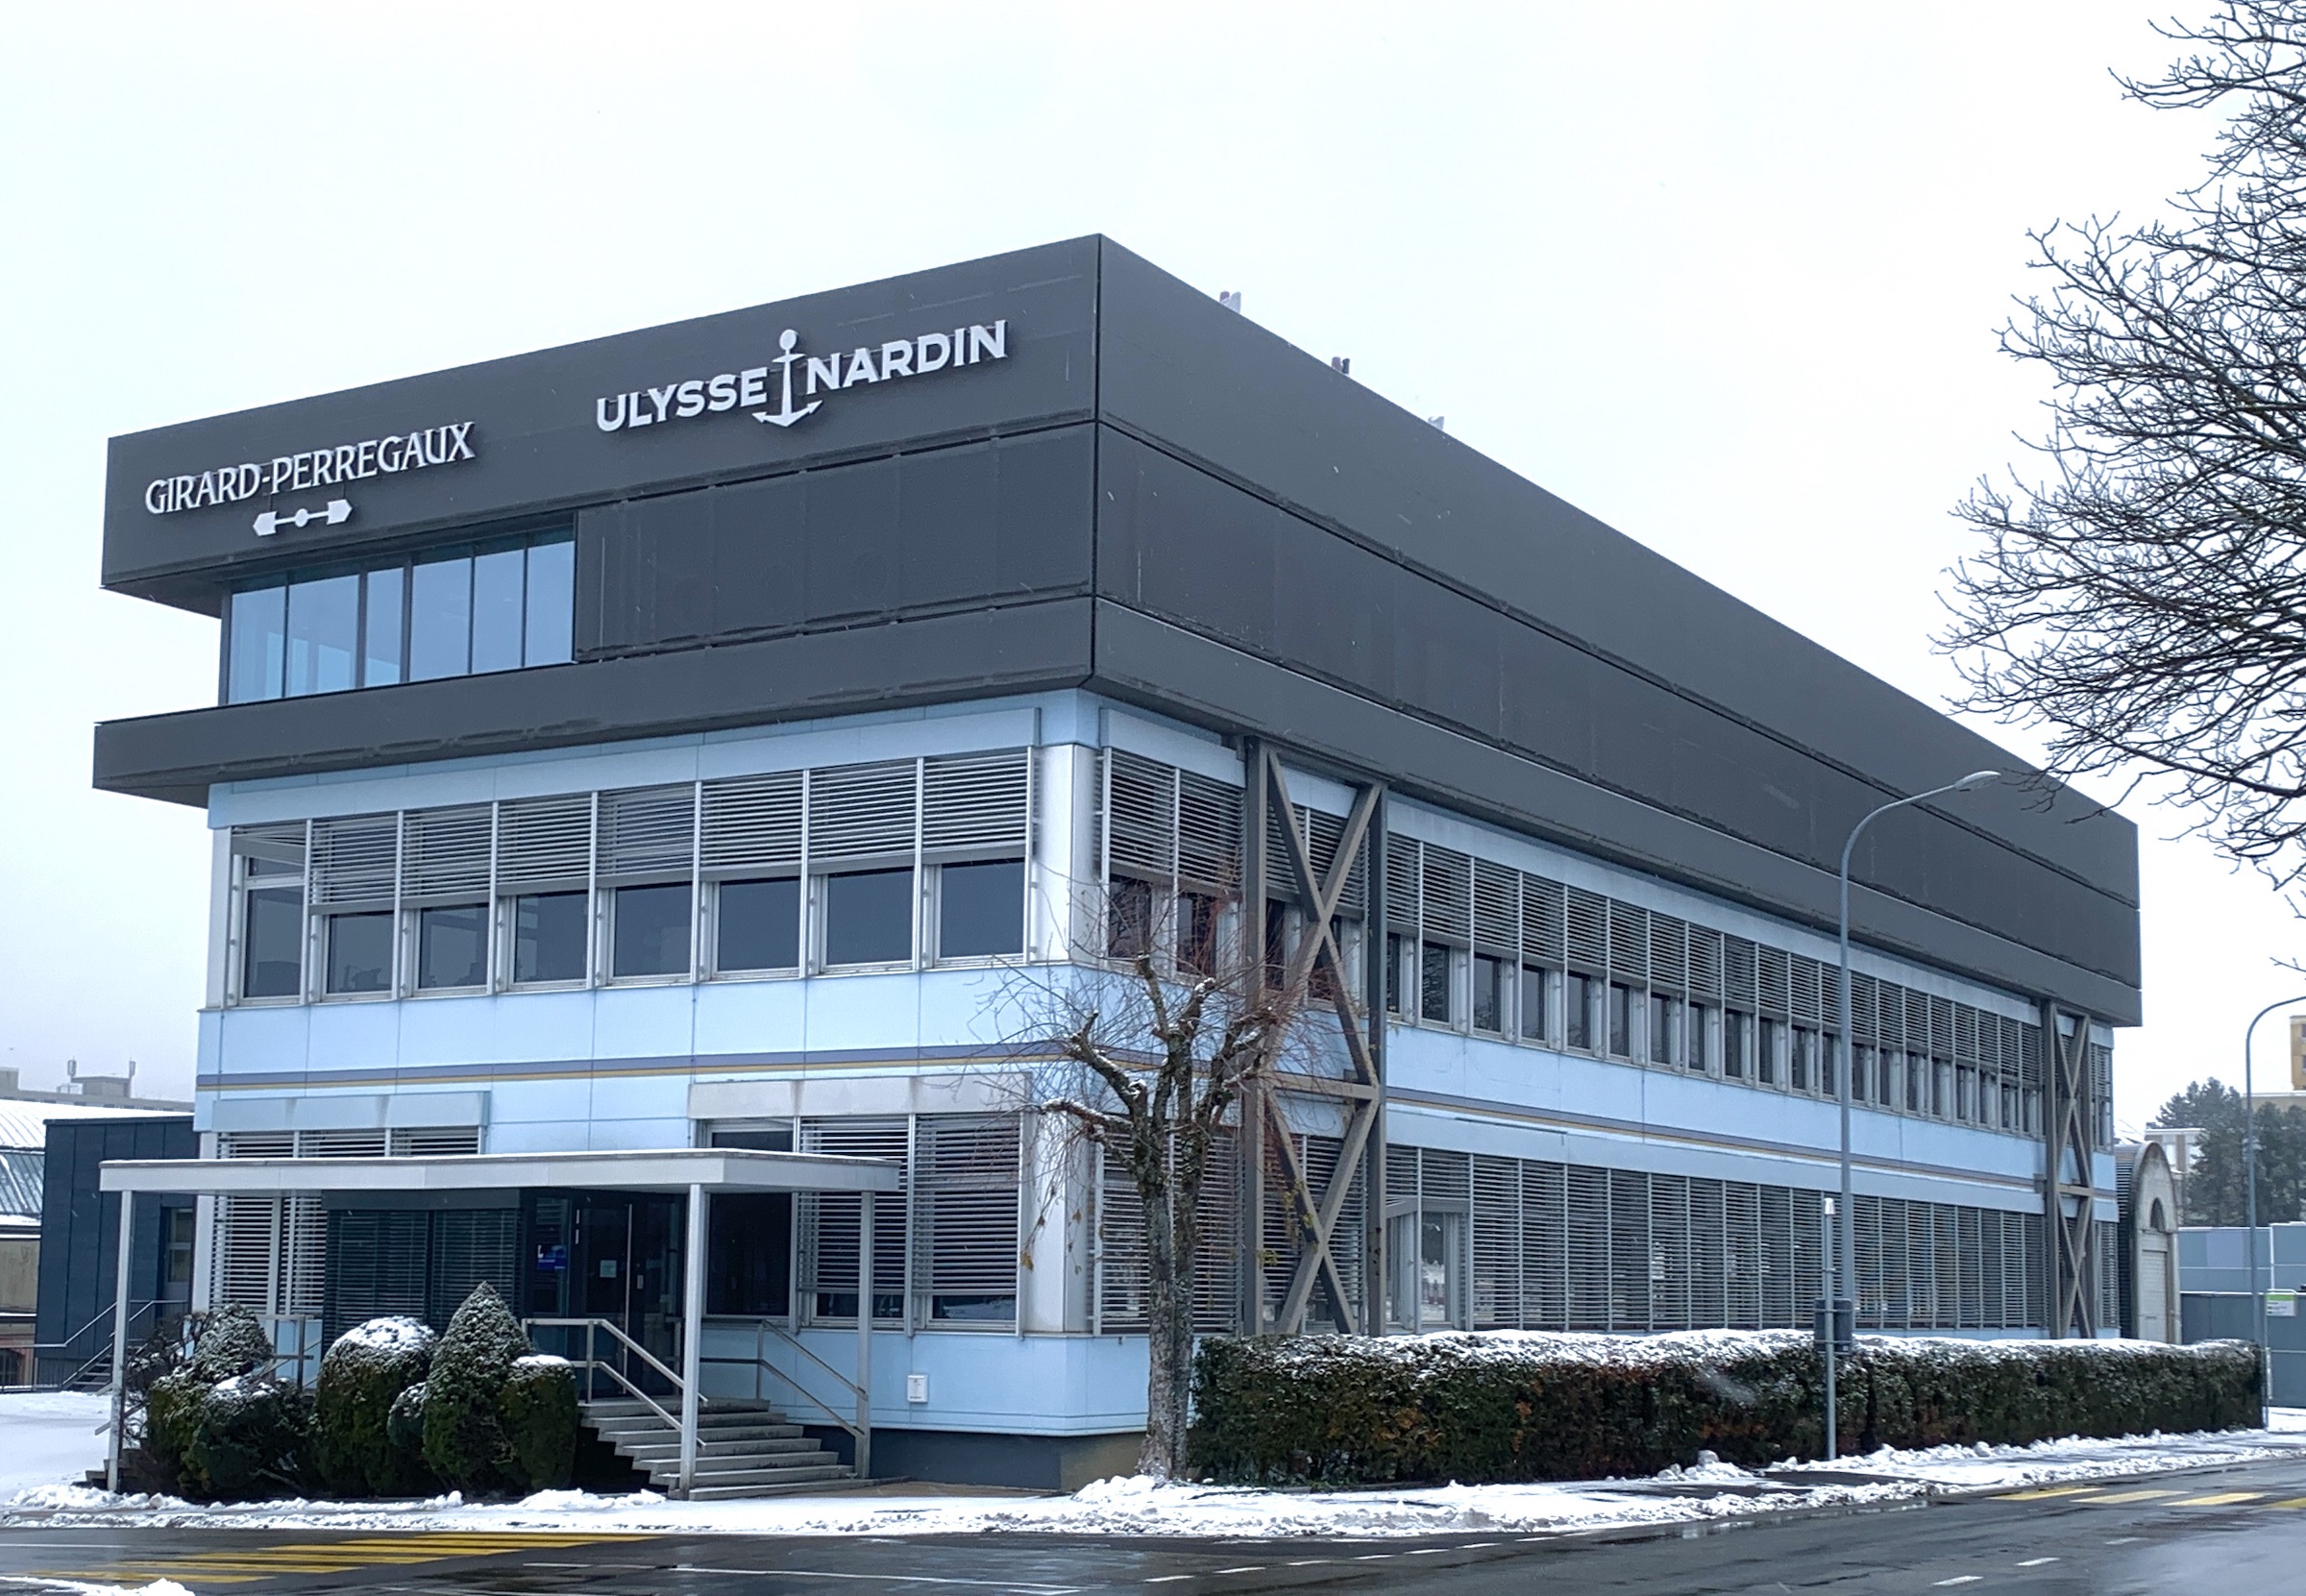 Building of the watch brand Ulysse Nardin in La Chaux-de-Fonds